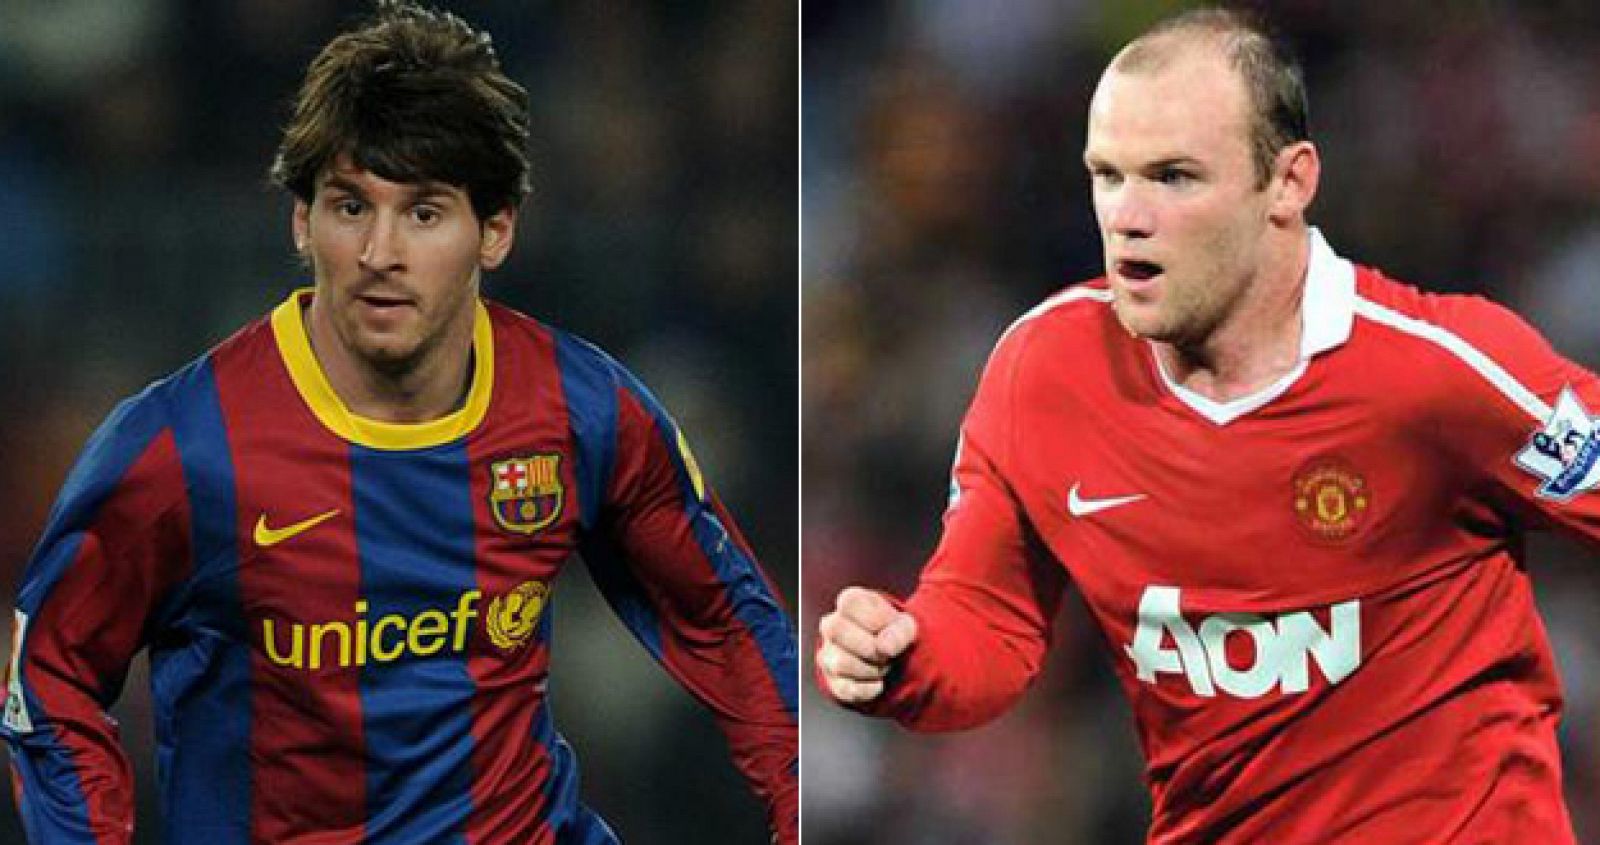 Los goleadores del Barça y Manchester United, Leo Messi y Wayne Rooney.